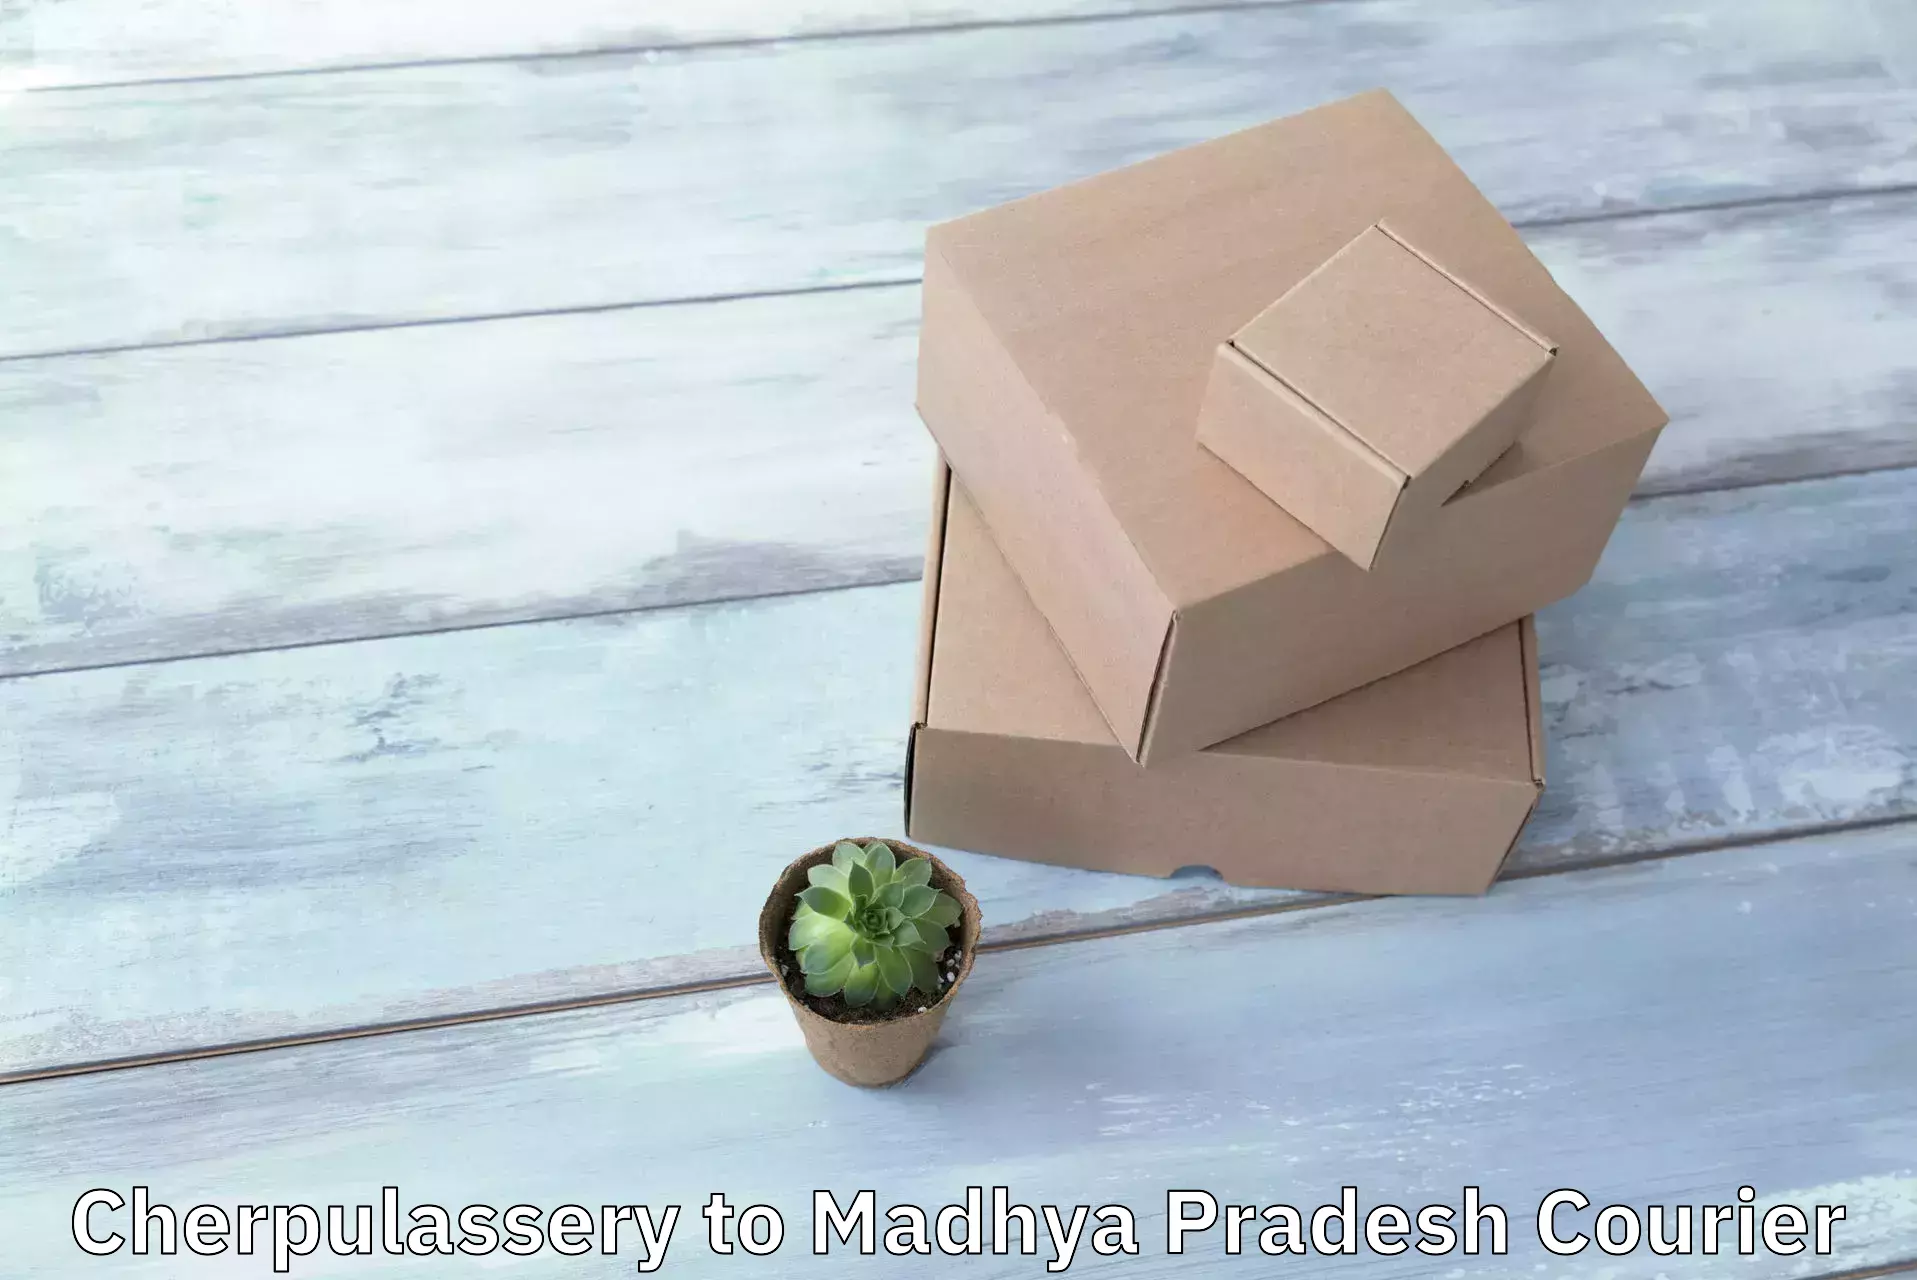 Nationwide delivery network Cherpulassery to Madhya Pradesh